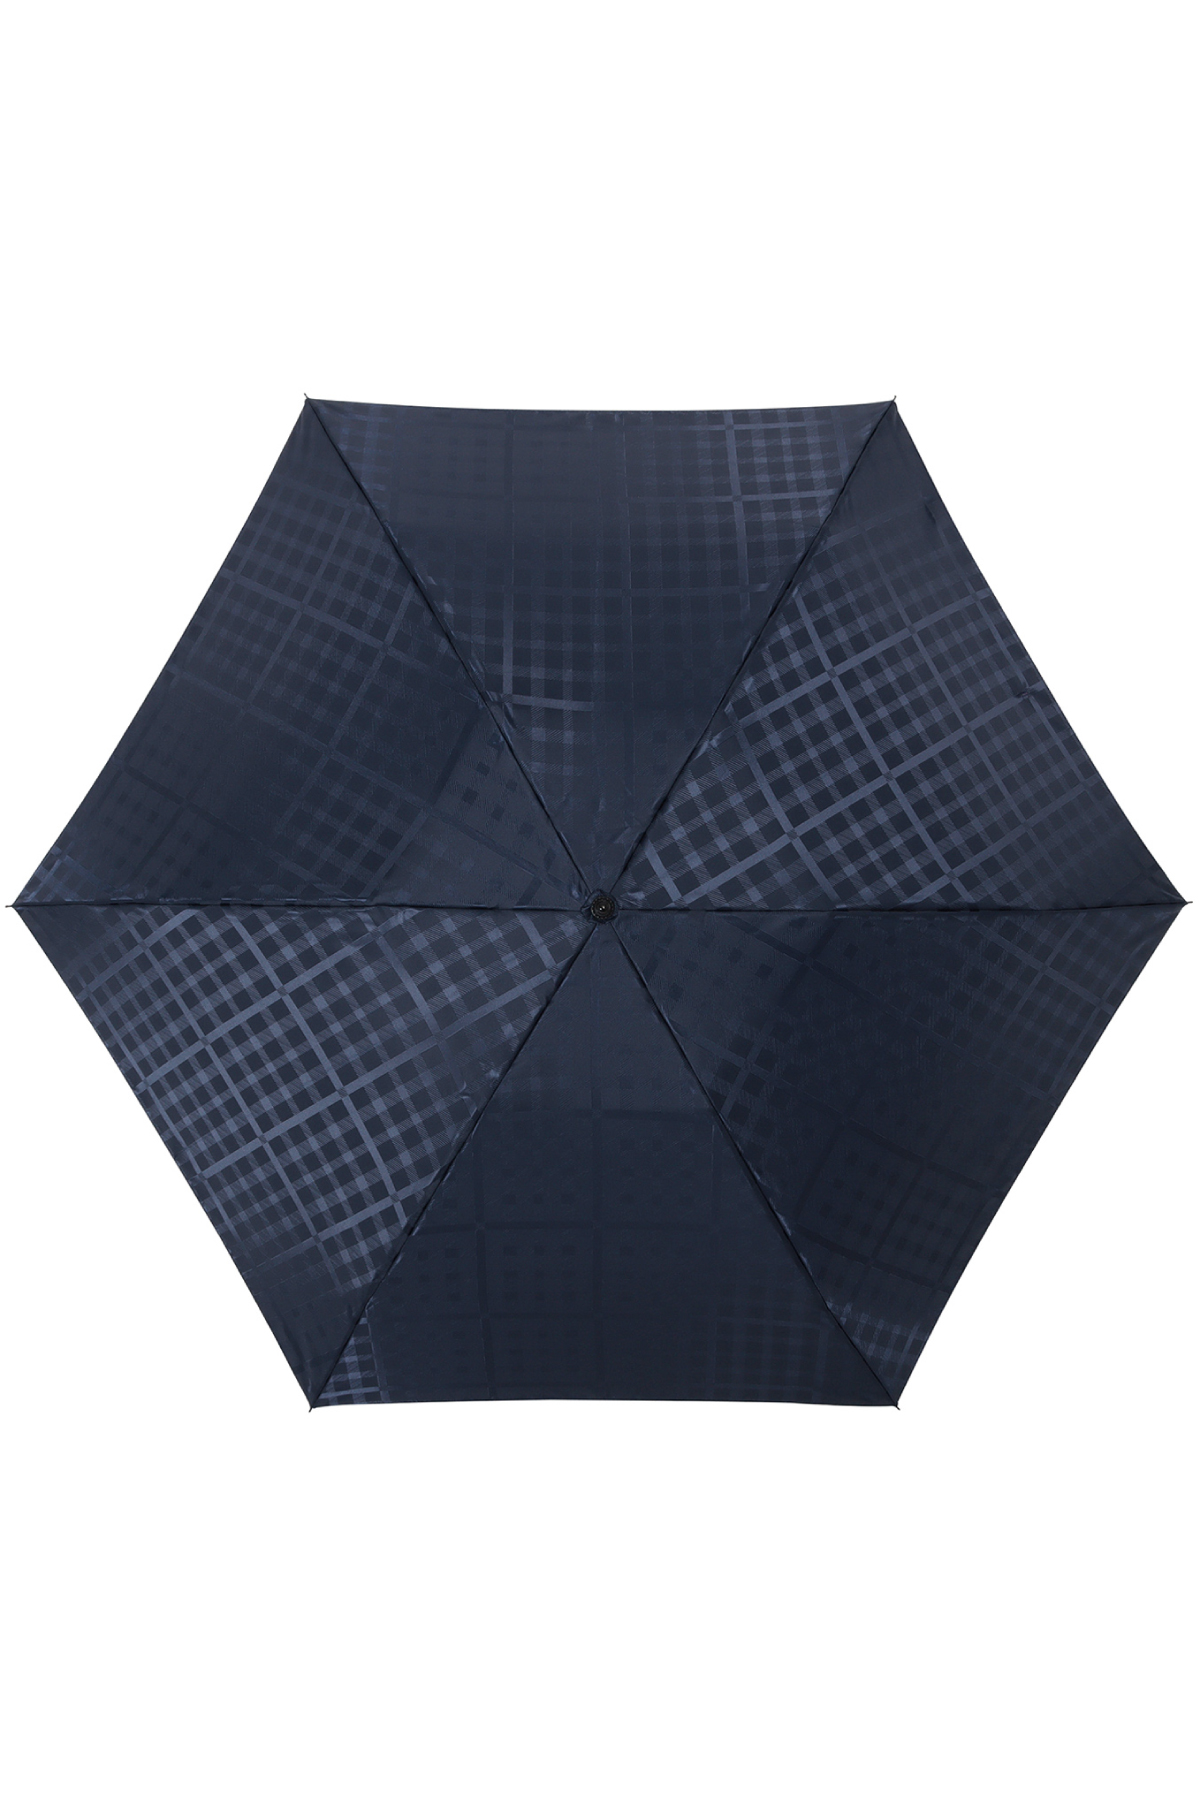 【雨傘】ミニ折りたたみ傘ジャカード 詳細画像 8